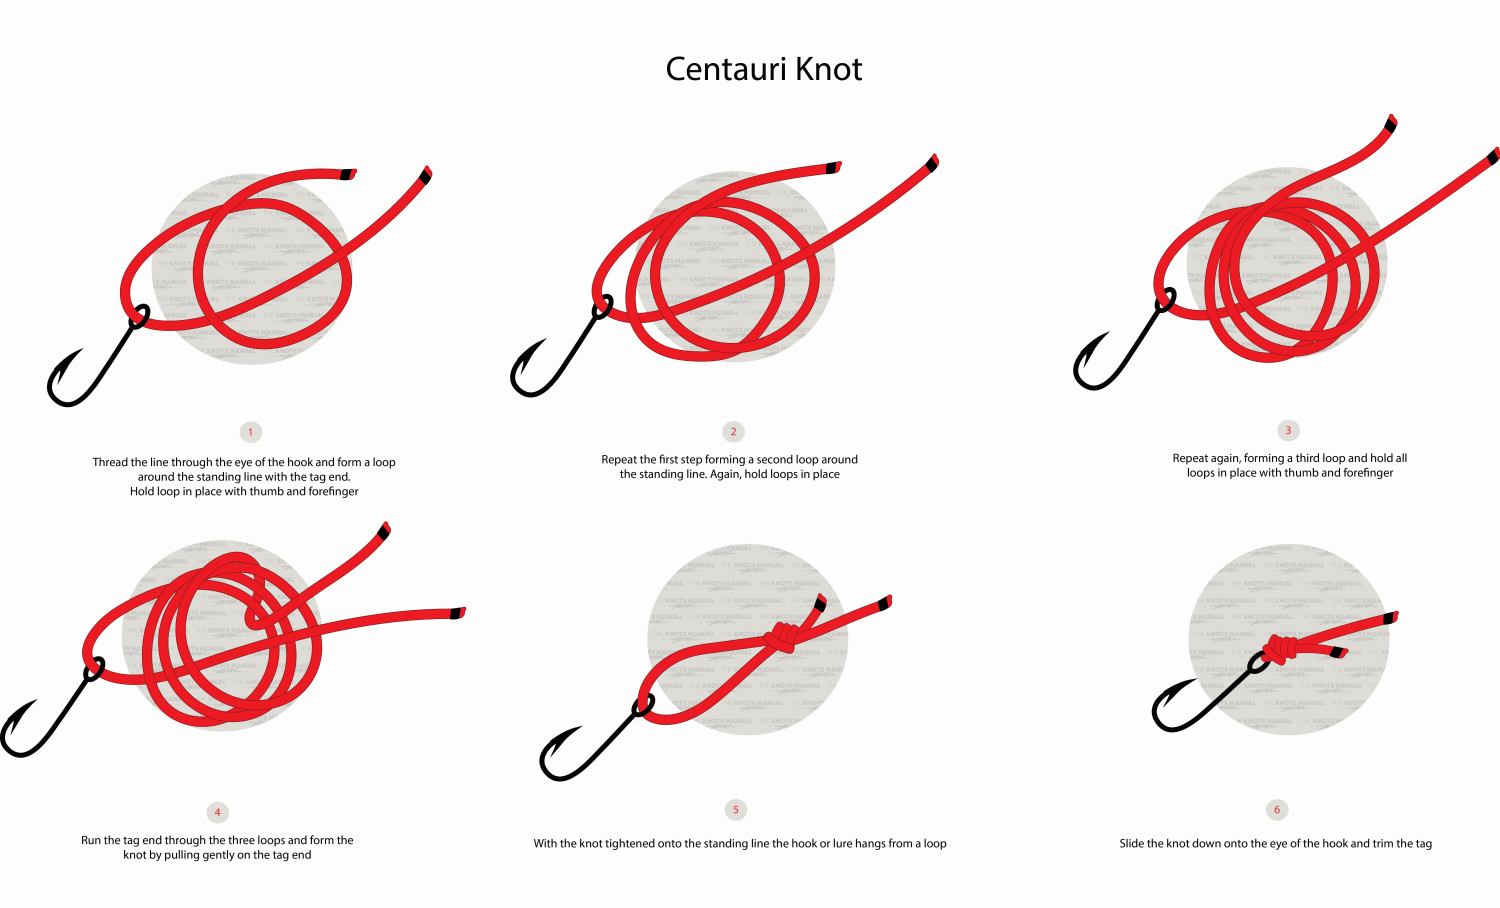 centauri knot step by step